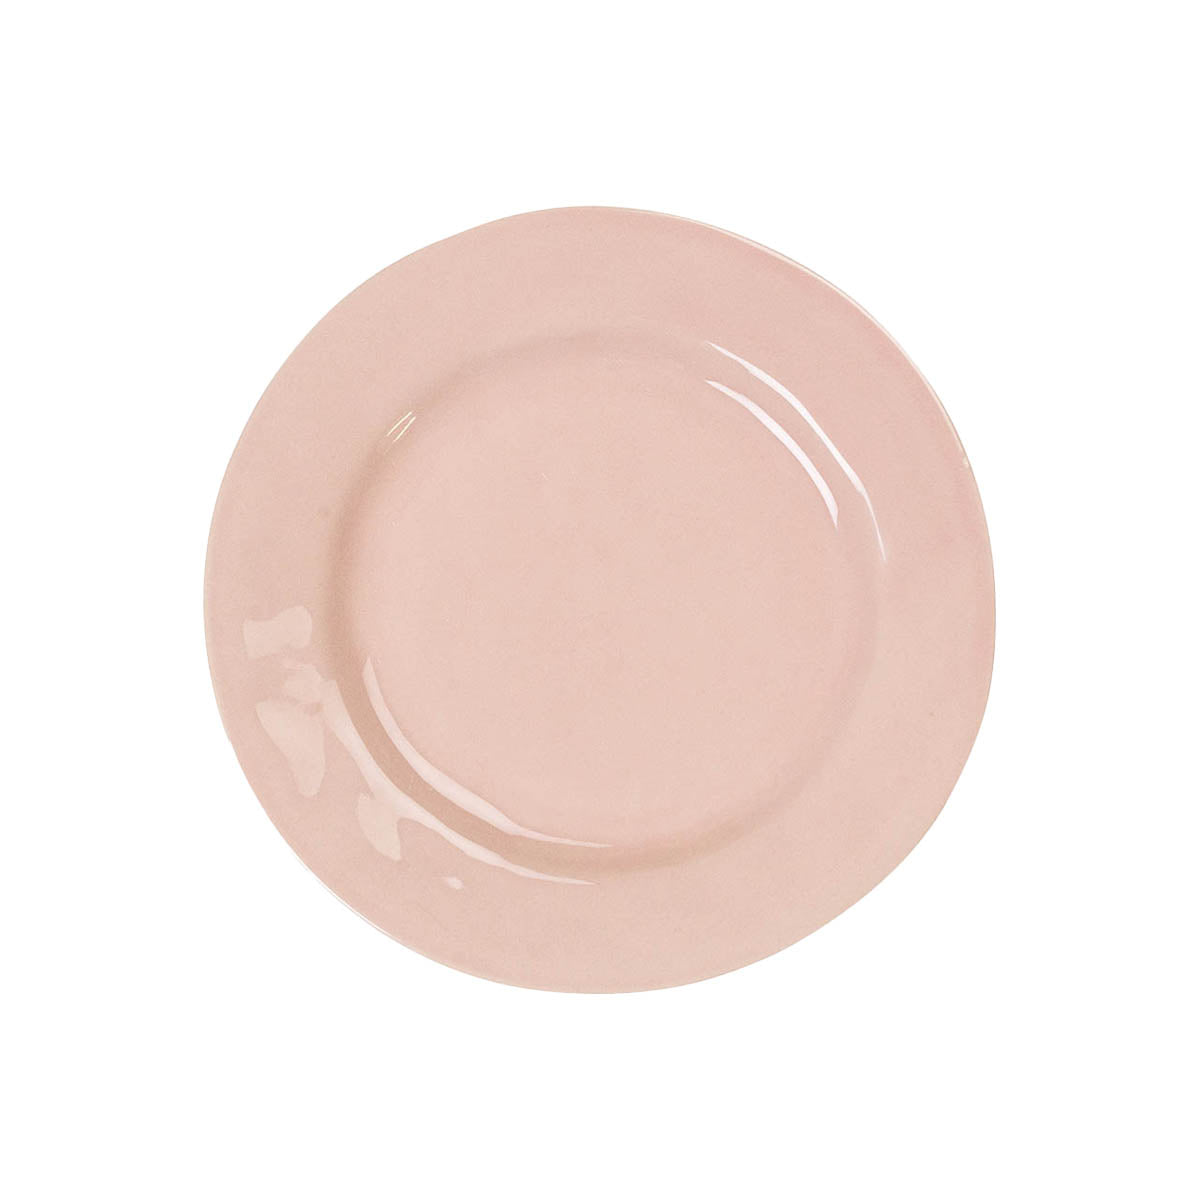 Puro Dessert/Salad Plate in Blush